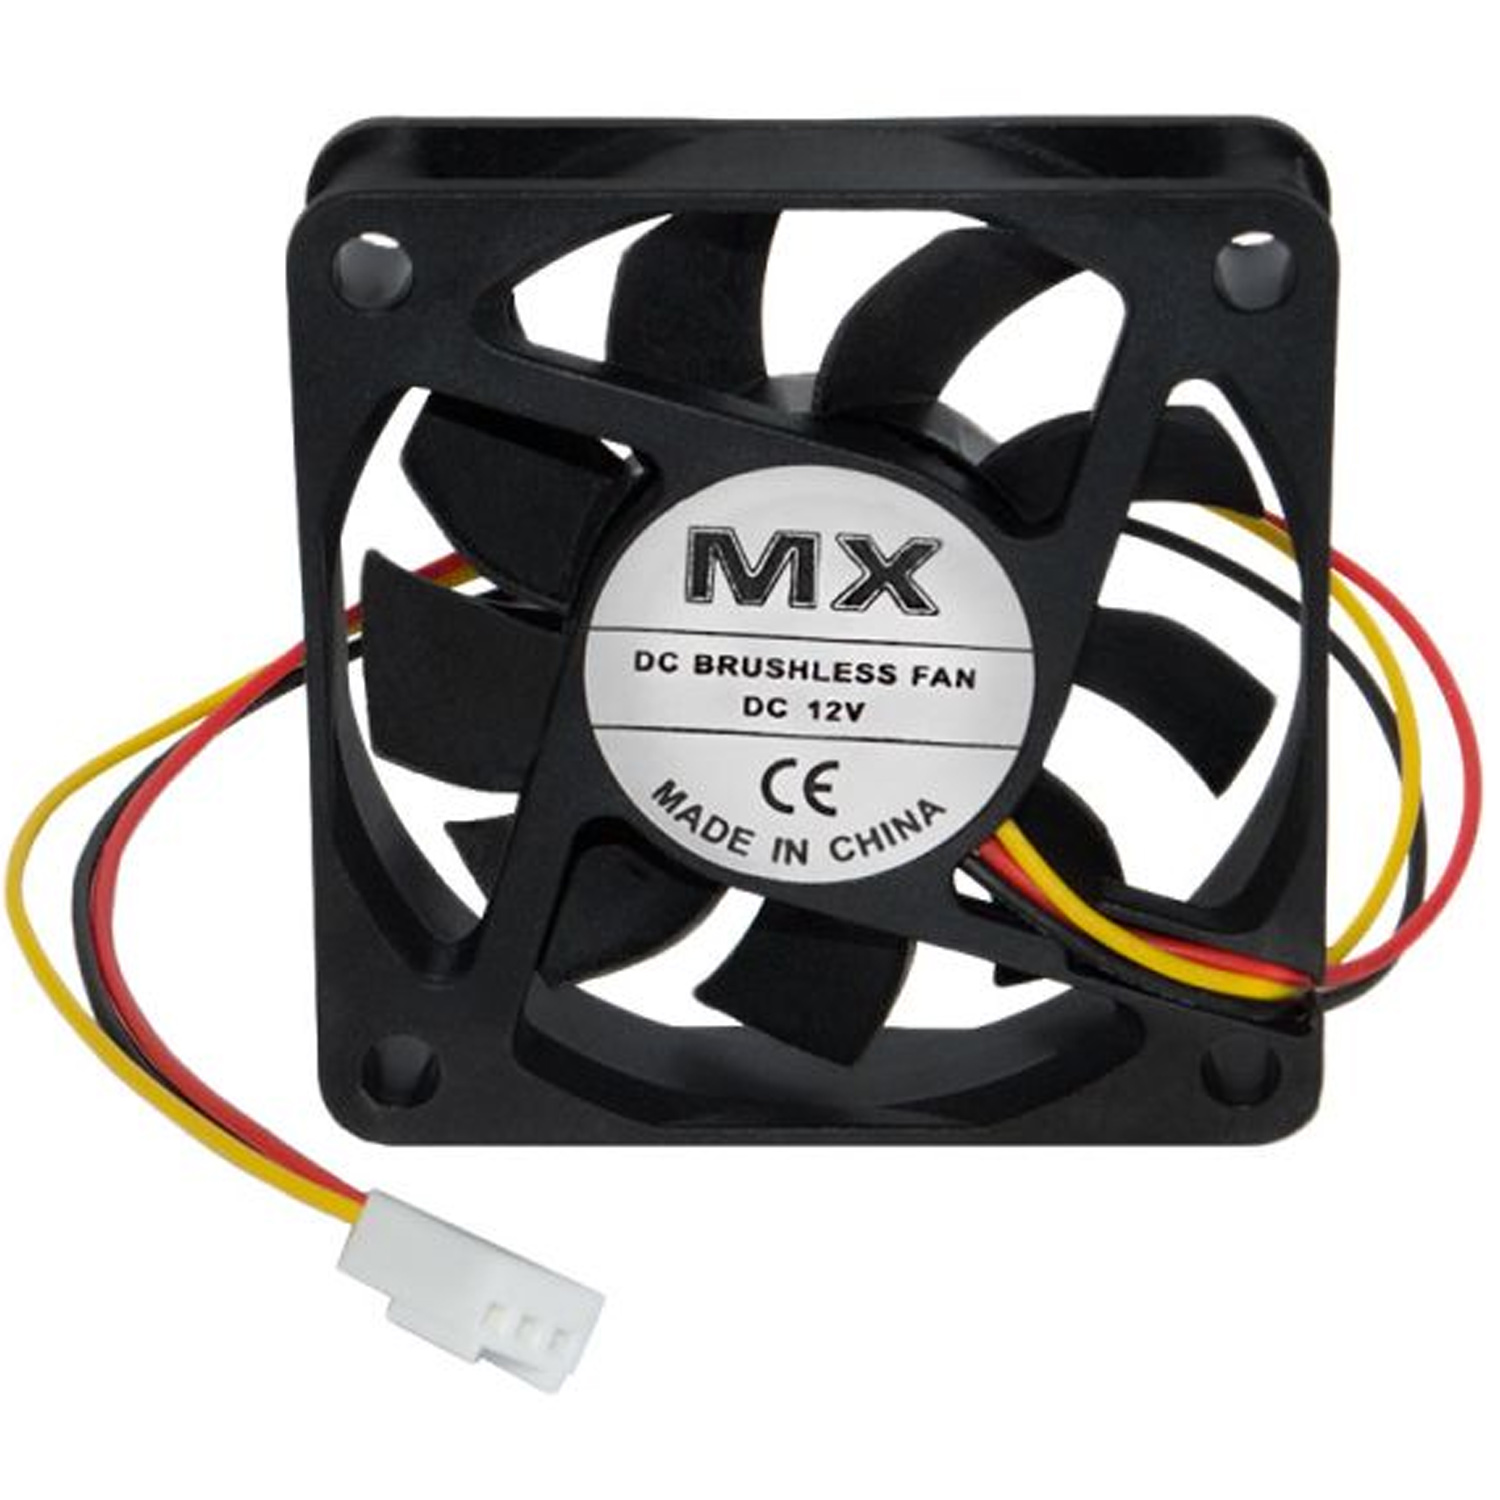 Вентилятор MX-9025 12V 3 провода 92 x 92 x 25 mm, 0.2A, с функцией FG, фото